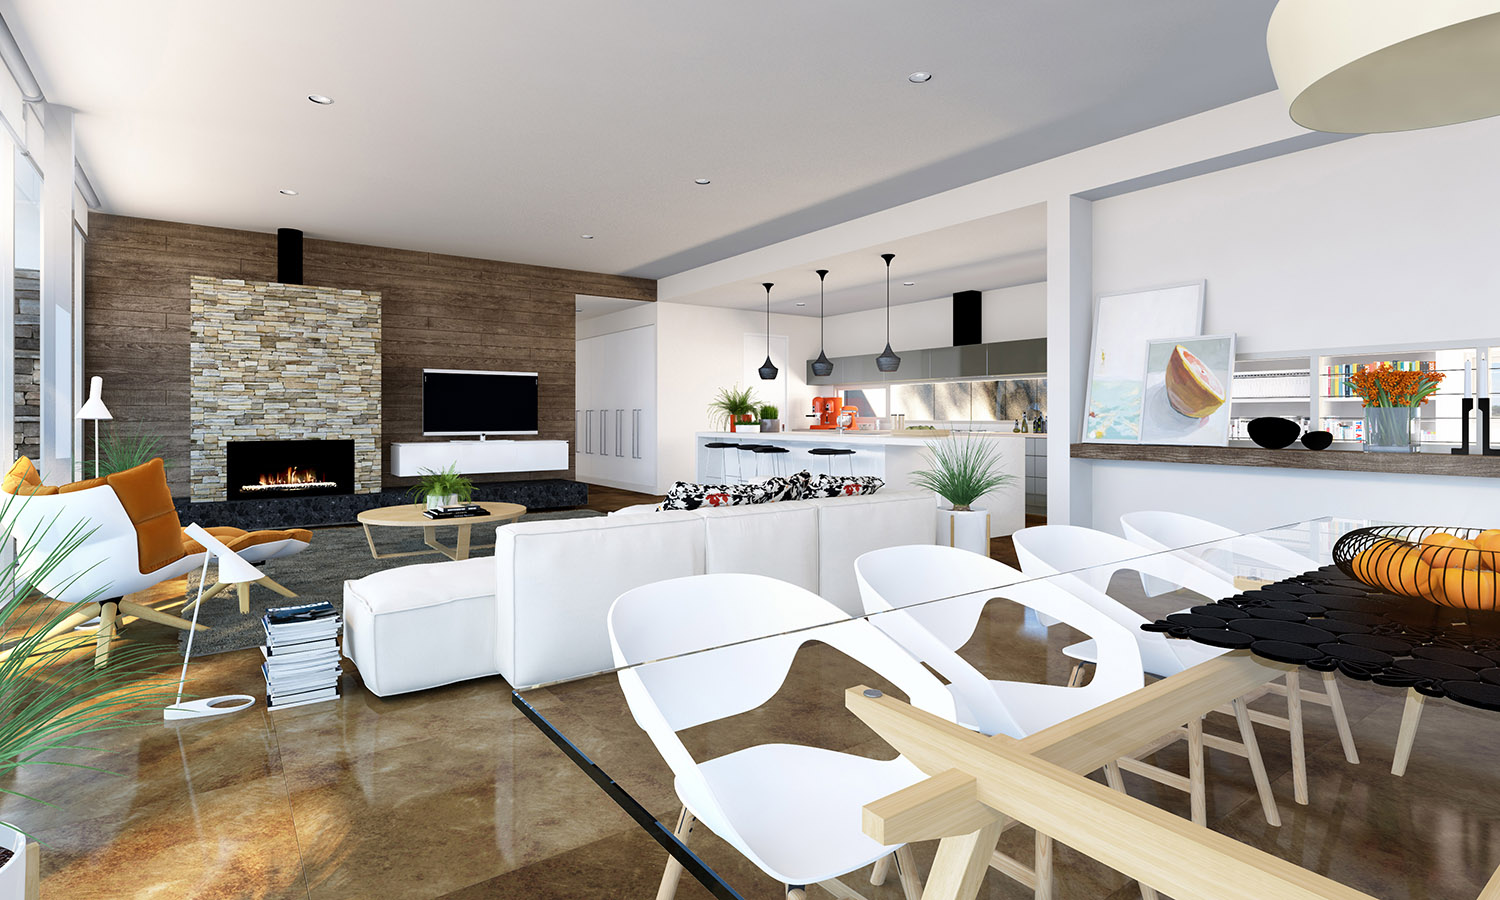 Studio Apartment Interiors Inspiration | Architecture & Design
